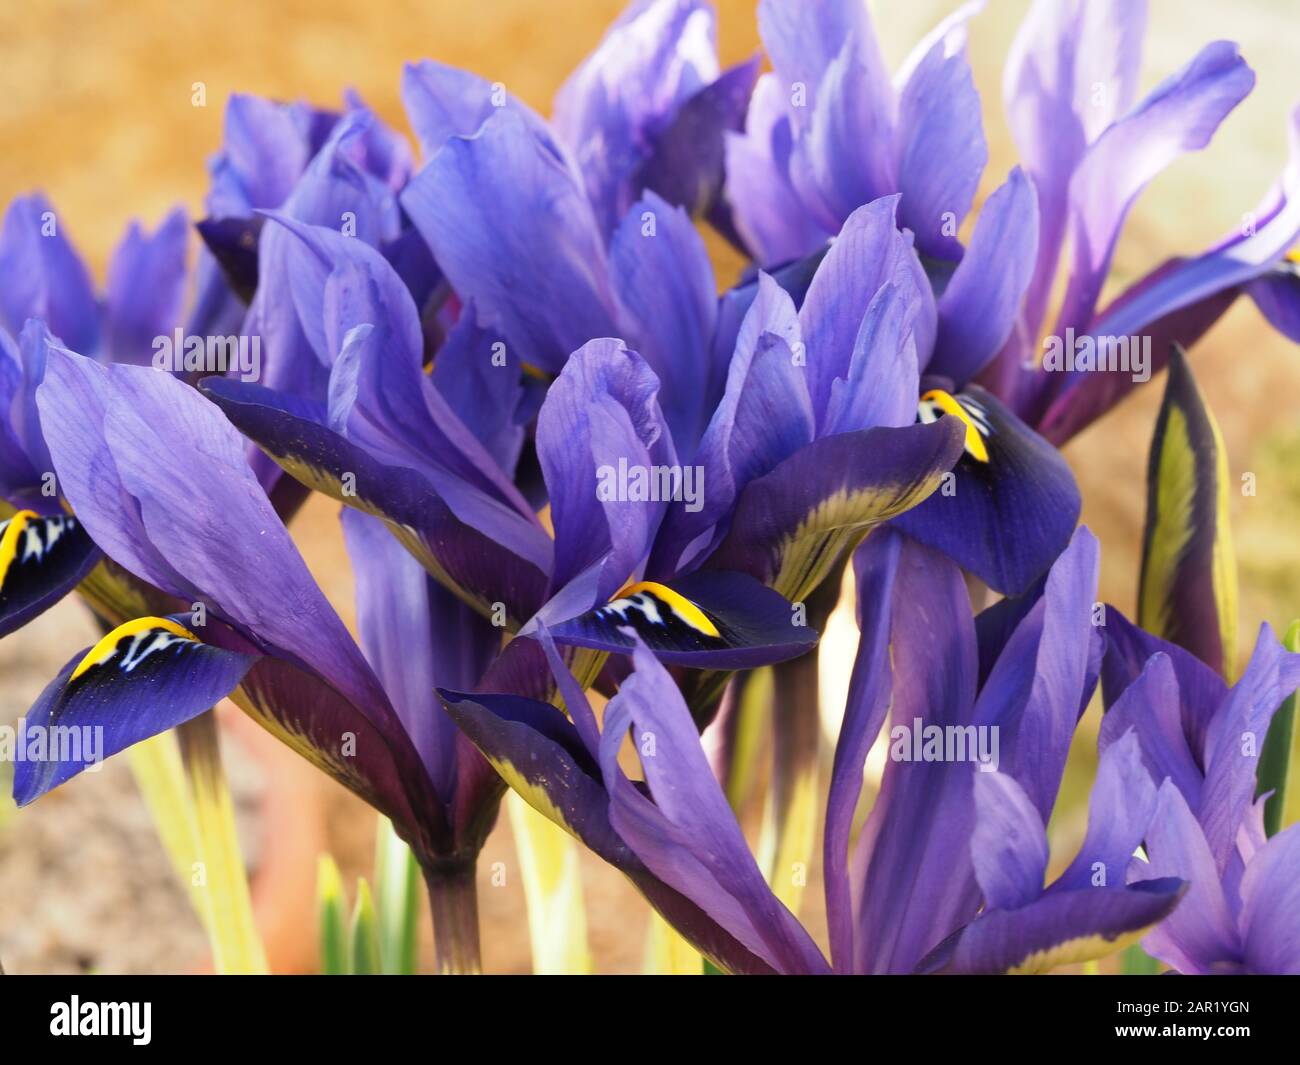 Closeup of beautiful miniature purple iris flowers, Iris histrioides variety Palm Springs Stock Photo